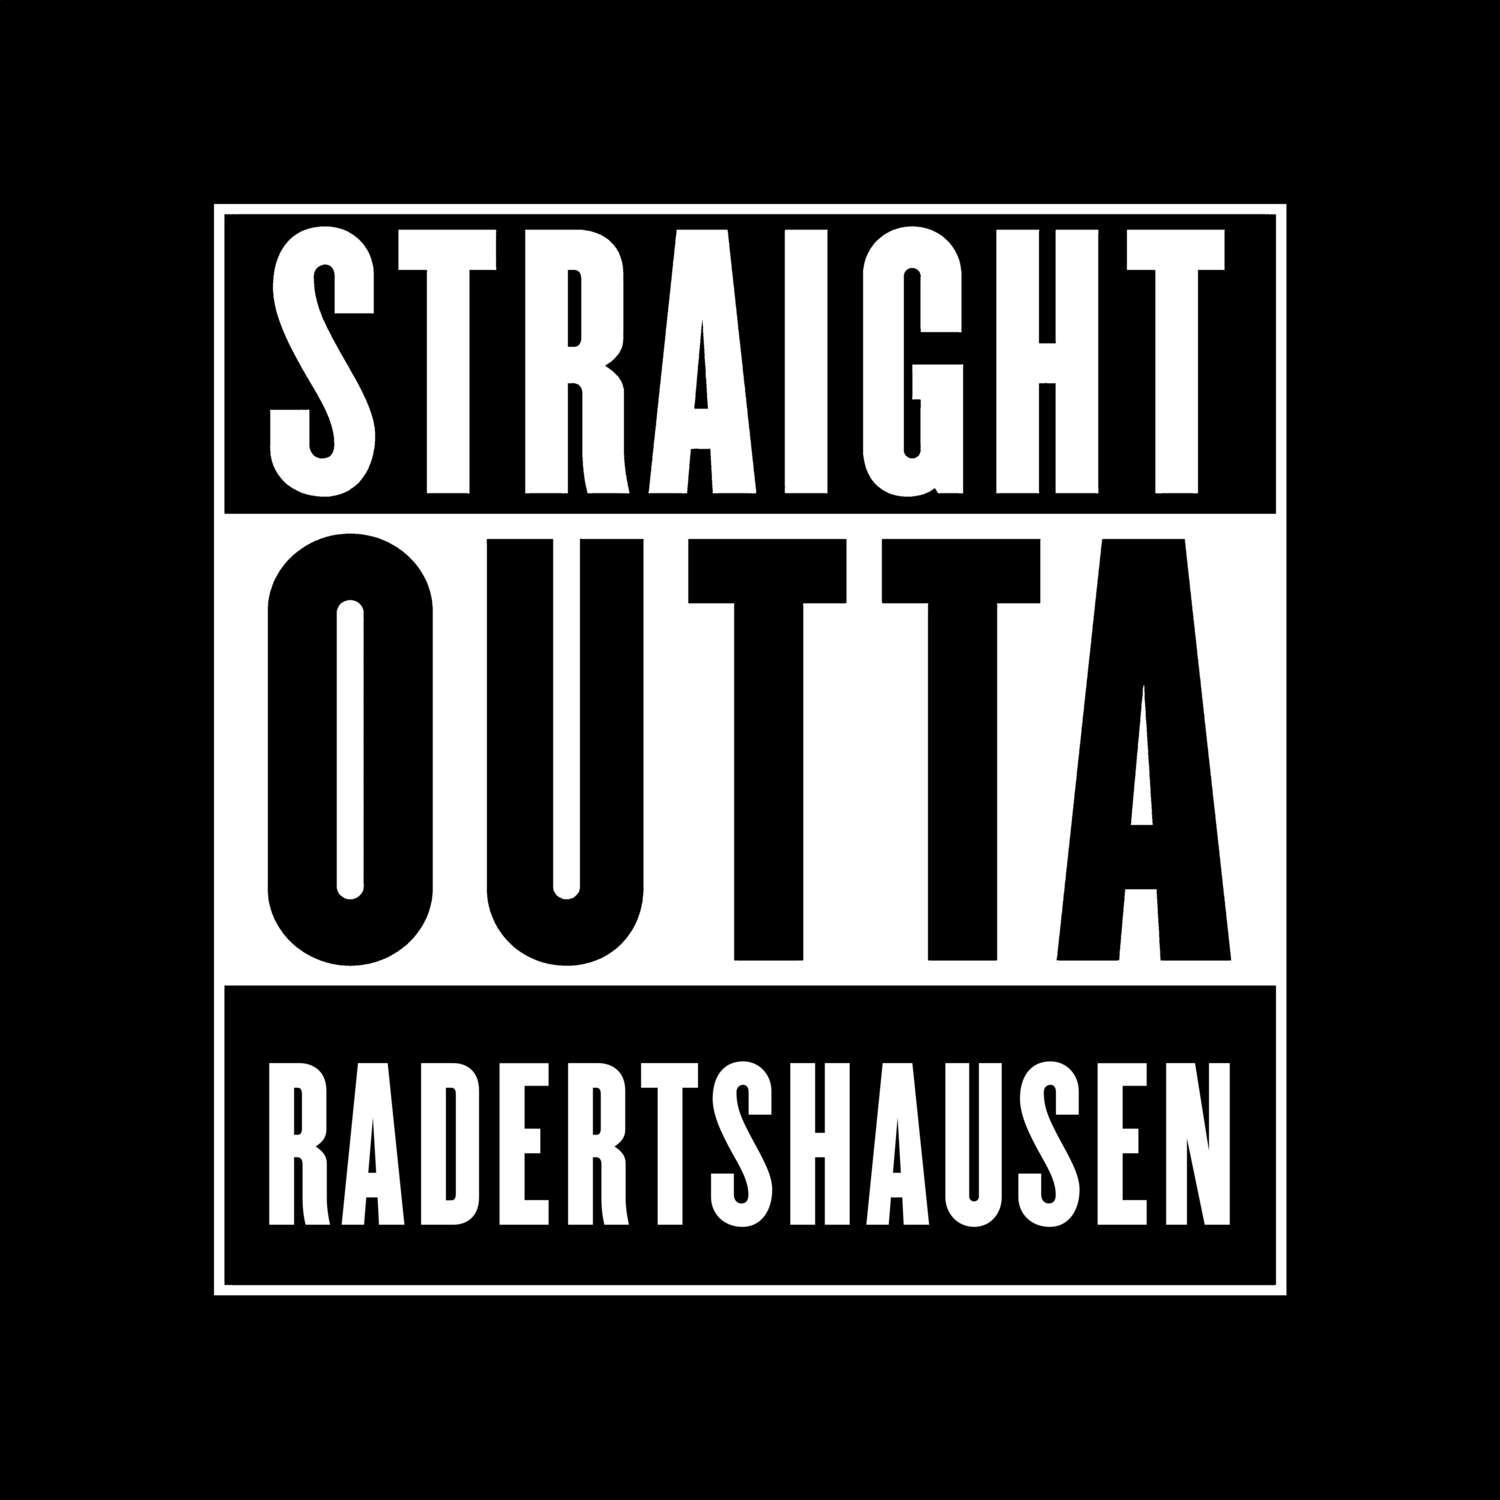 Radertshausen T-Shirt »Straight Outta«